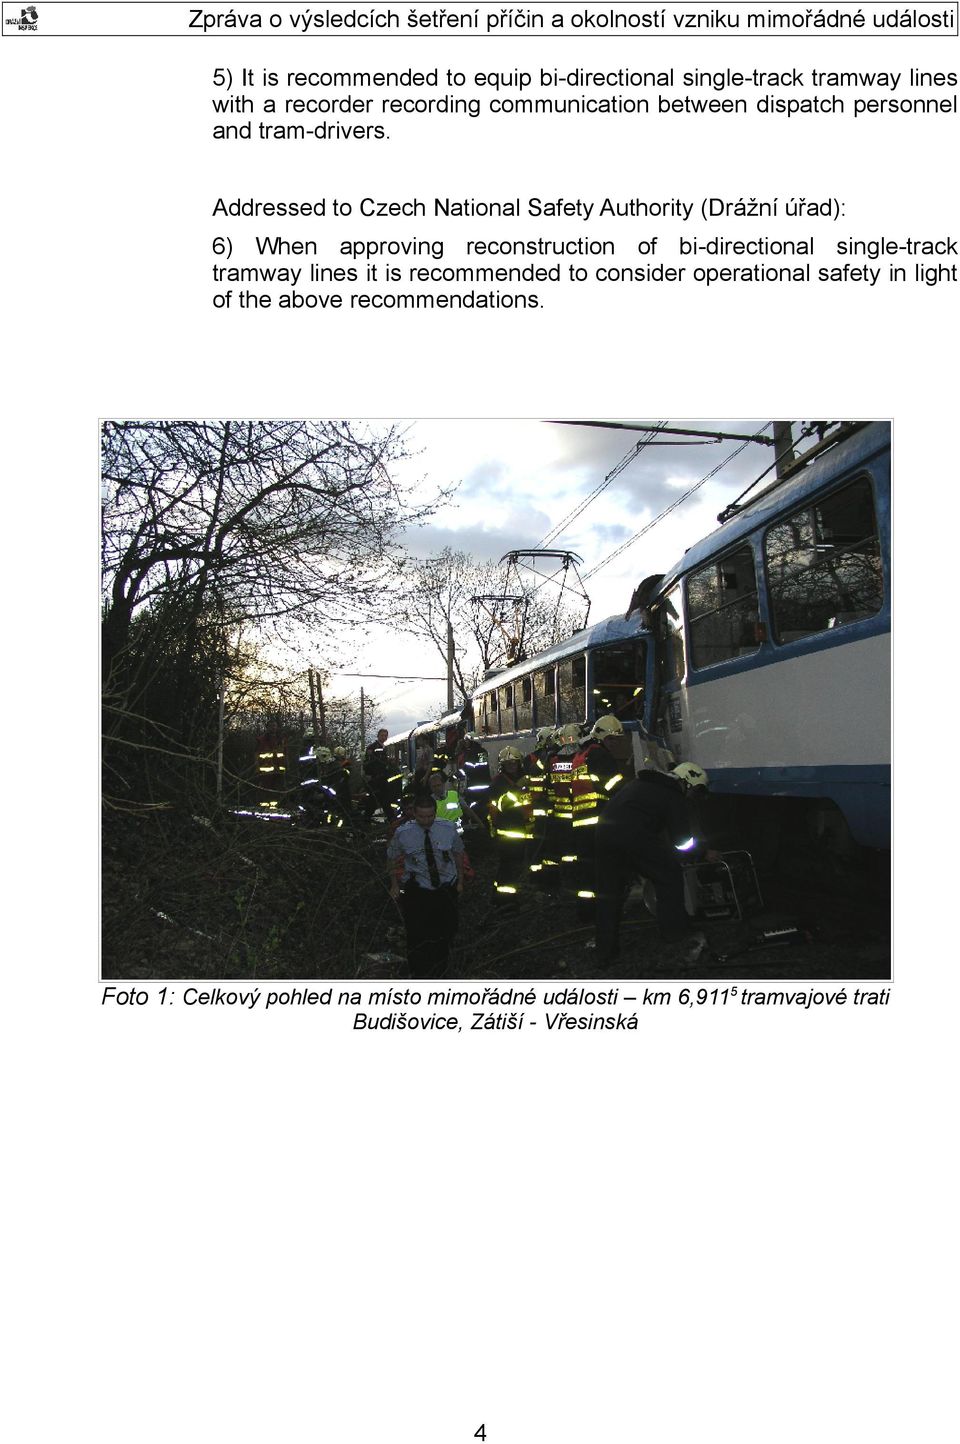 Addressed to Czech National Safety Authority (Drážní úřad): 6) When approving reconstruction of bi-directional single-track